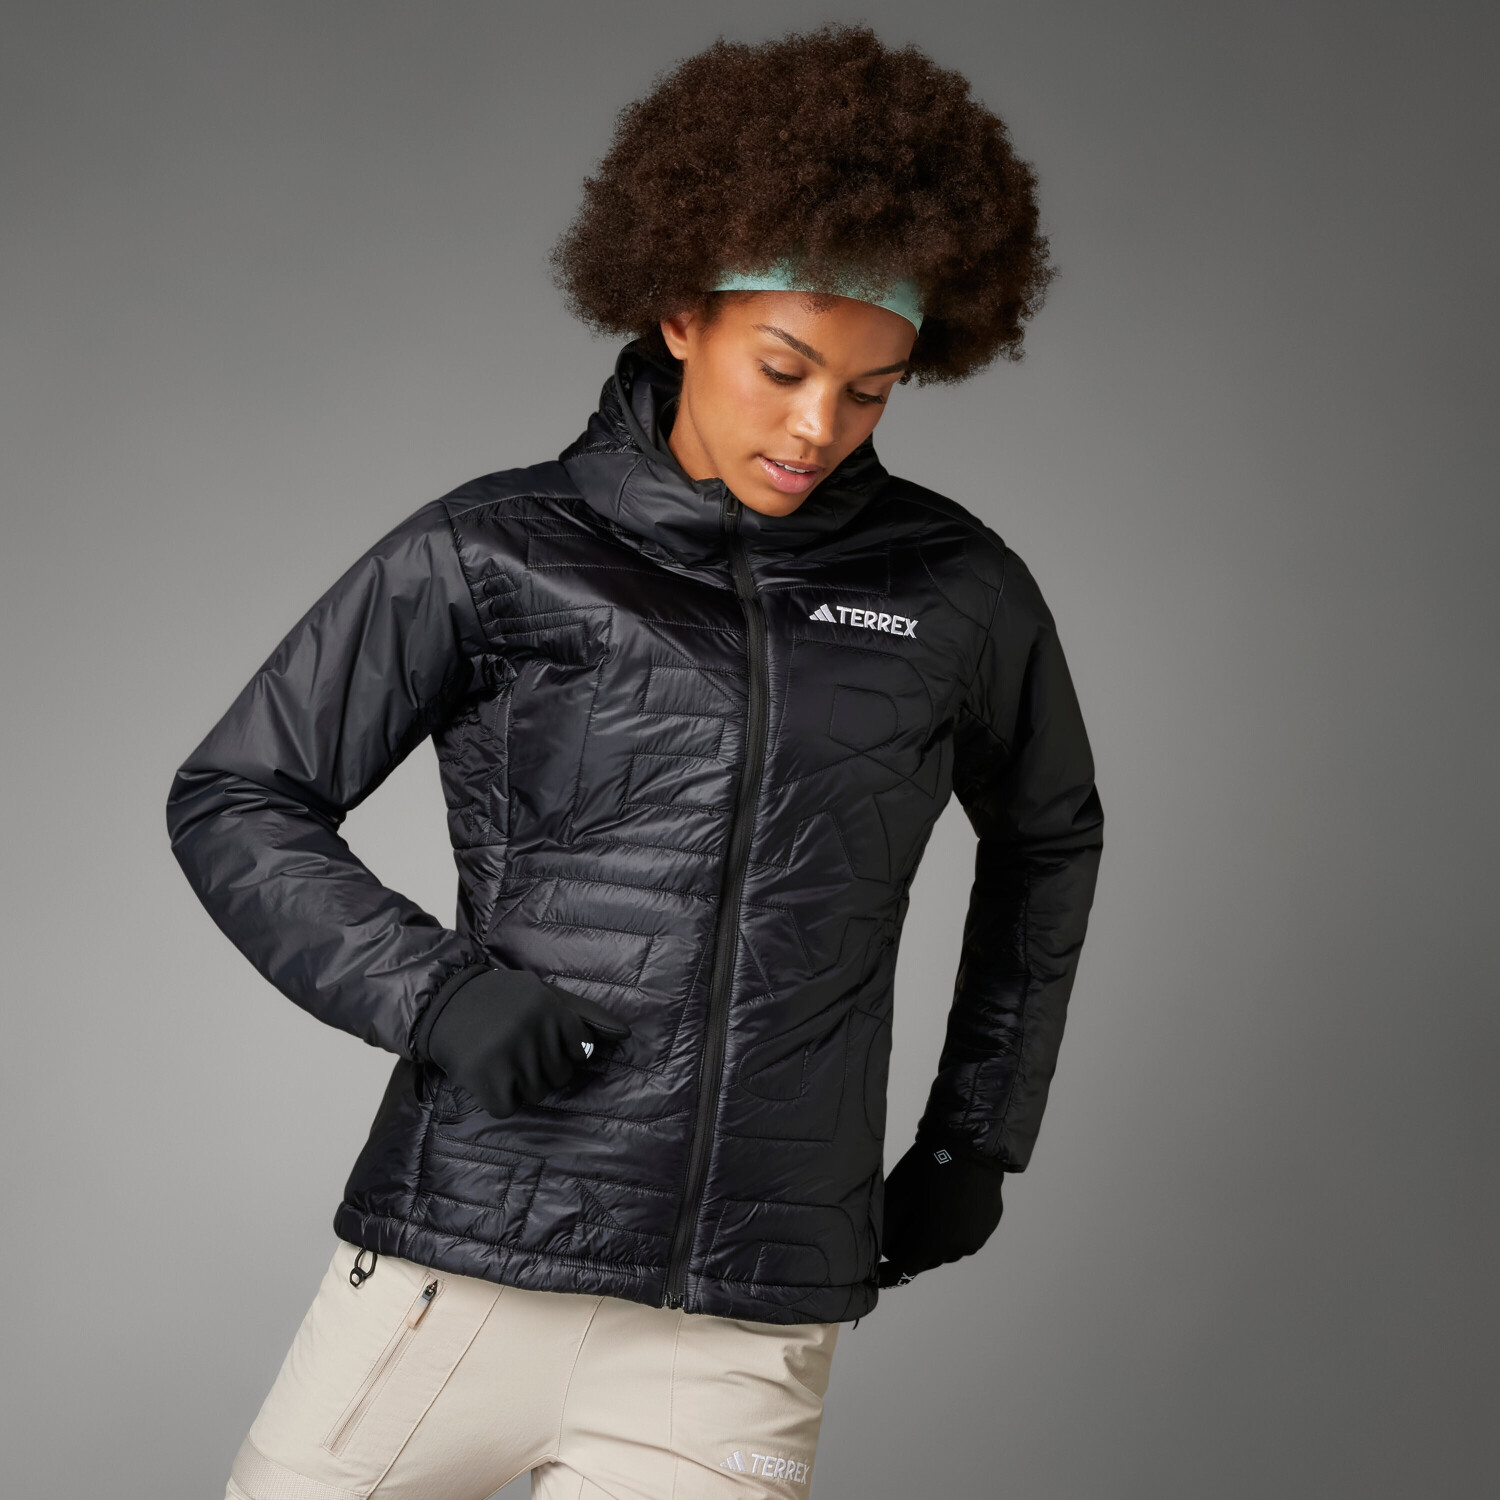 129,59 € | bei Adidas (IB4183) Hooded Jacket PrimaLoft ab Xperior Varilite Preisvergleich Terrex Woman black